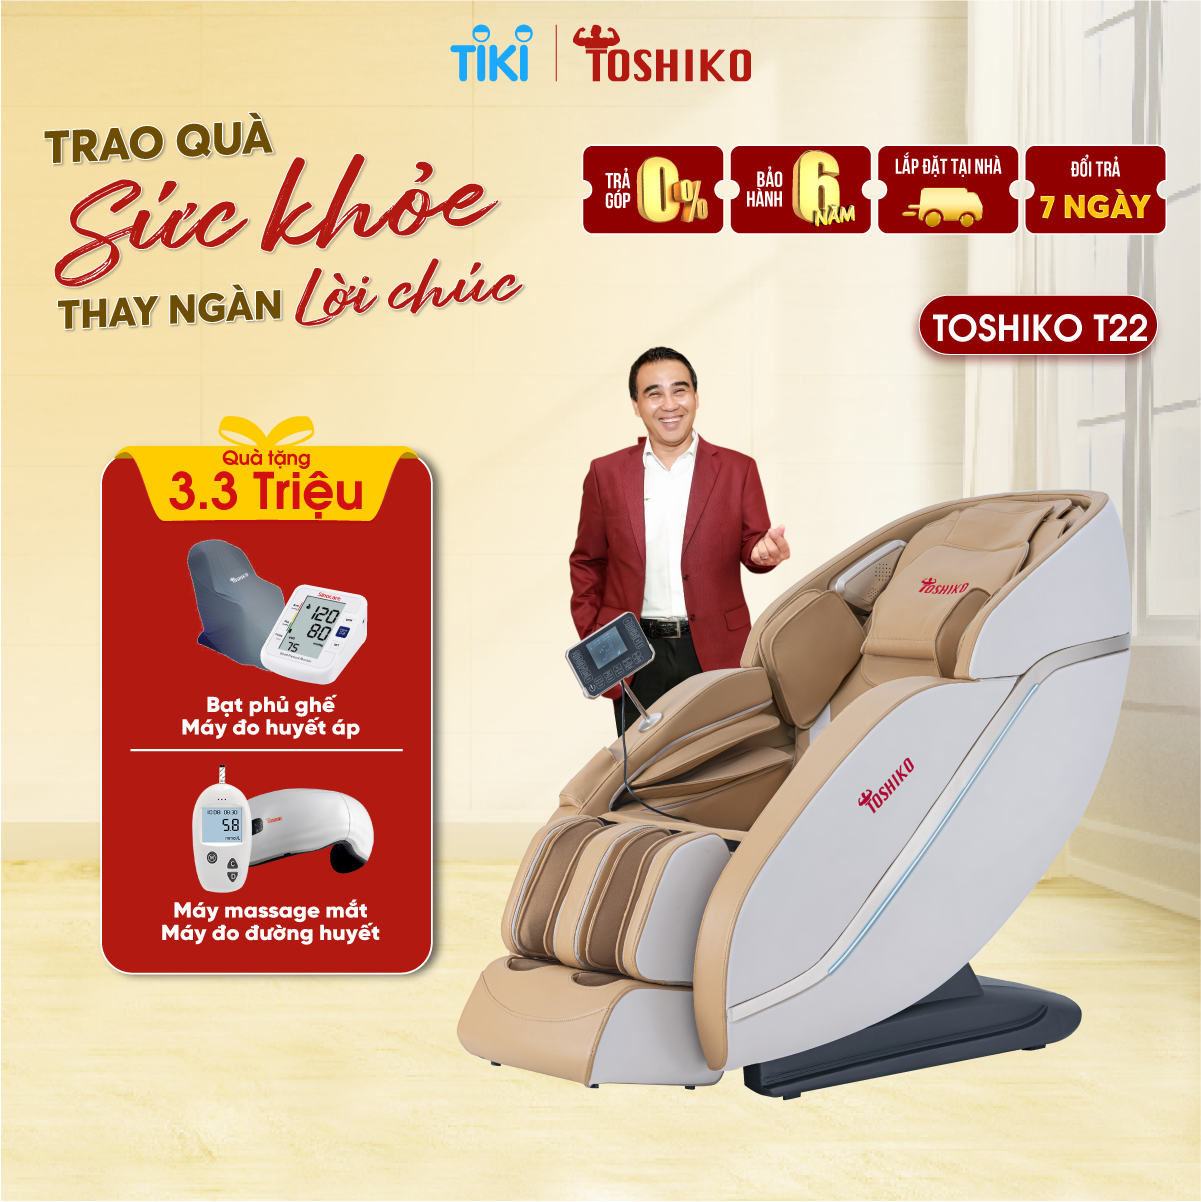 [Lắp đặt tại nhà] Ghế massage toàn thân Toshiko T22 - Chức năng điều khiển bằng giọng nói, Tự động mát xa trị liệu,  kéo giãn, anion lắng đọng làm sạch không khí, đa dạng các bài massage